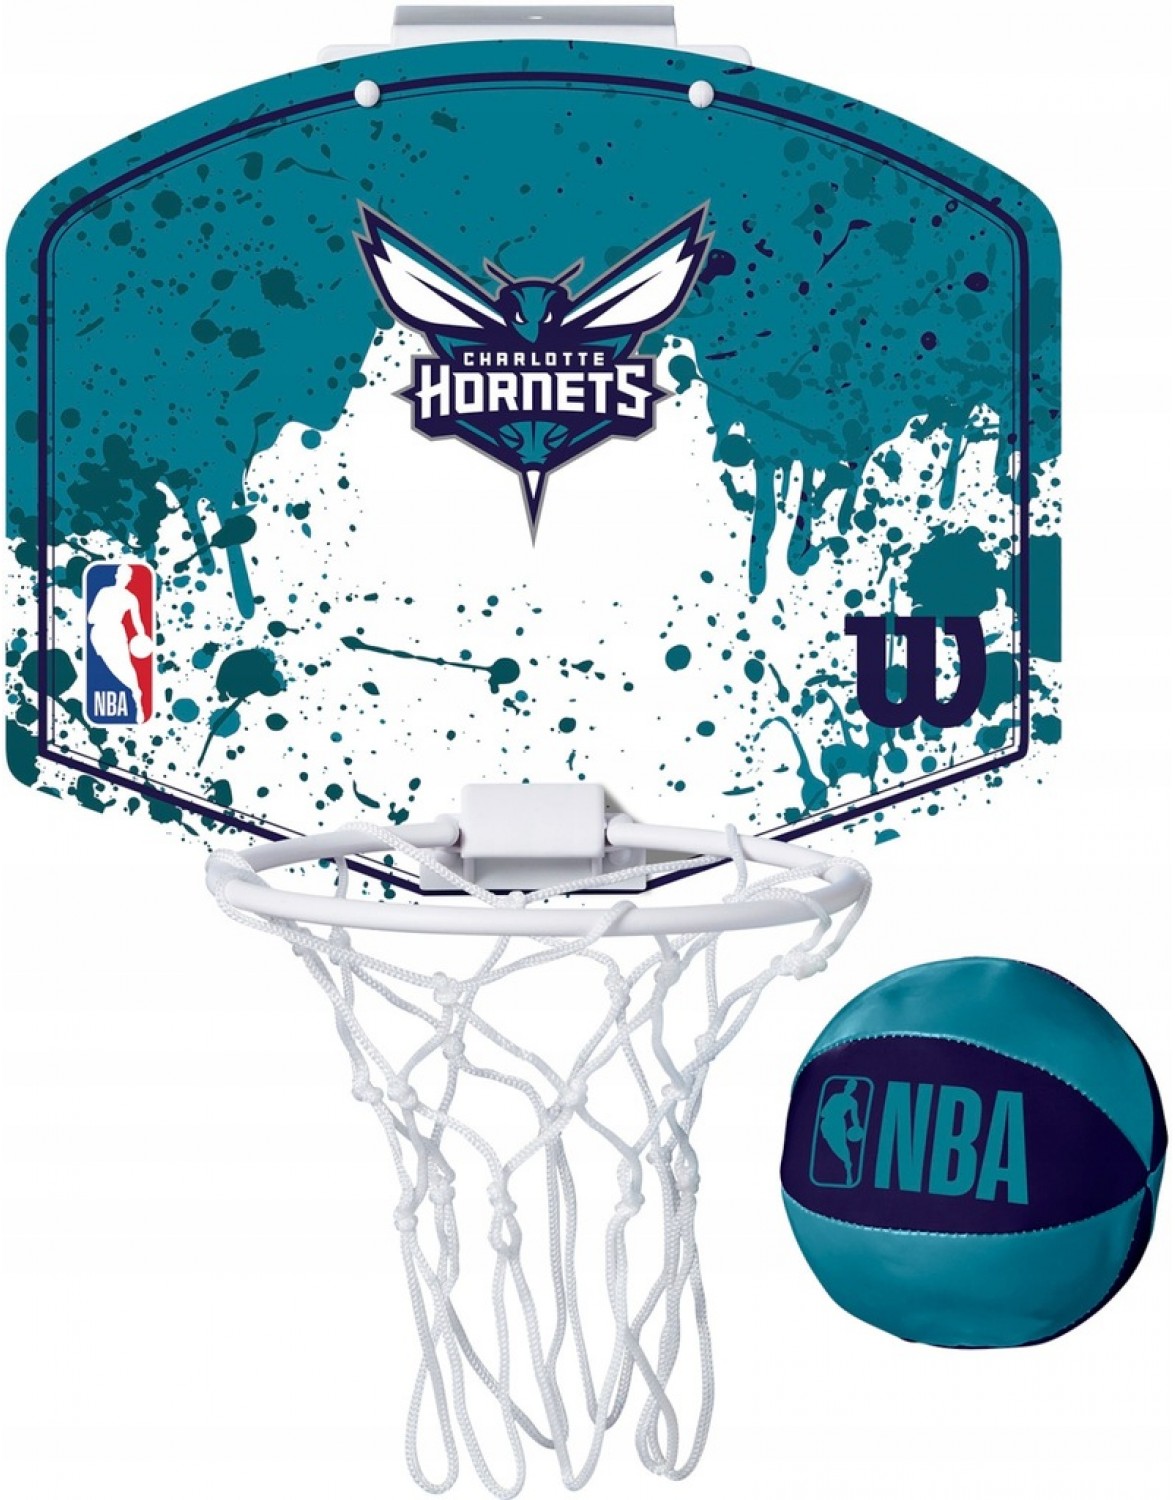 Баскетбольний комплект Wilson NBA Team Charlotte Hornets Mini Hoop. МІНІ-БАСКЕТБОЛЬНИЙ ДОШКА WILSON CHARLOTTE HORNETS NBA